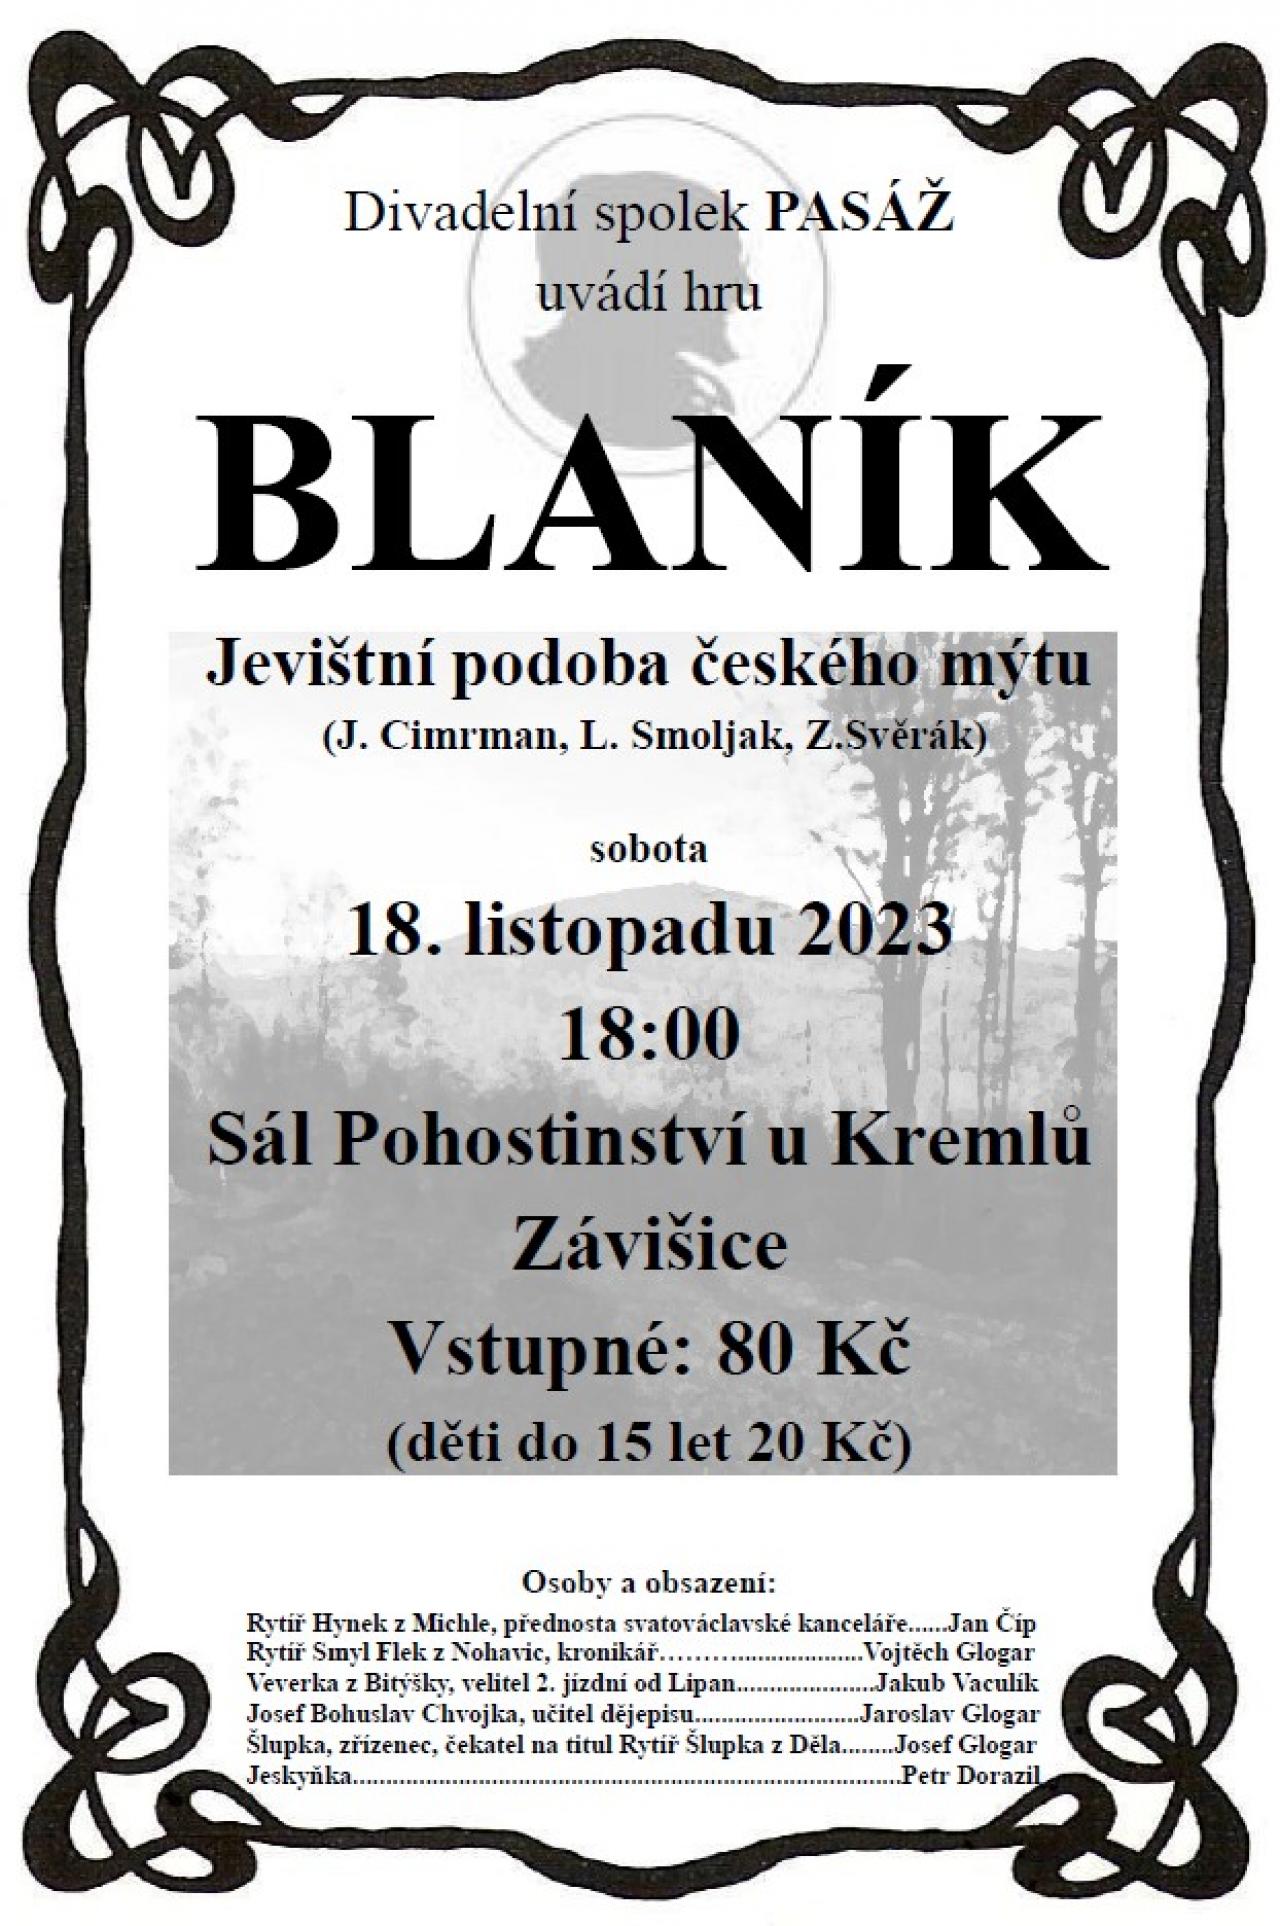 Divadelní představení - Blaník 18.11.